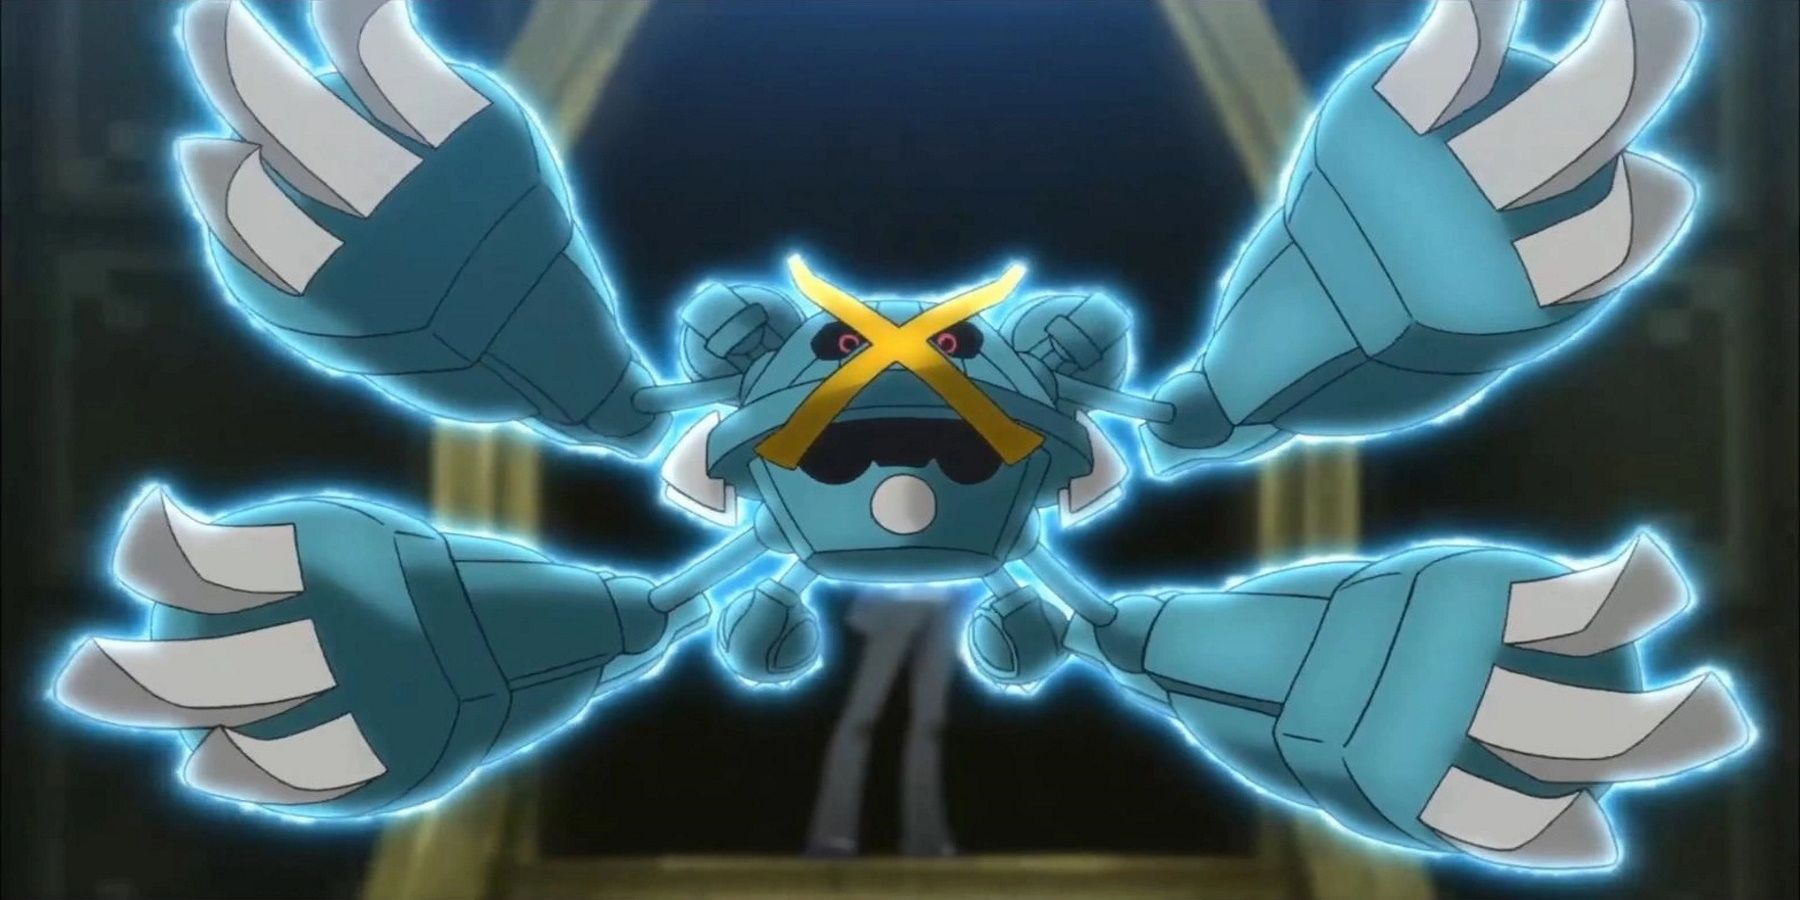 Steven Mega Metagross in Pokemon Anime